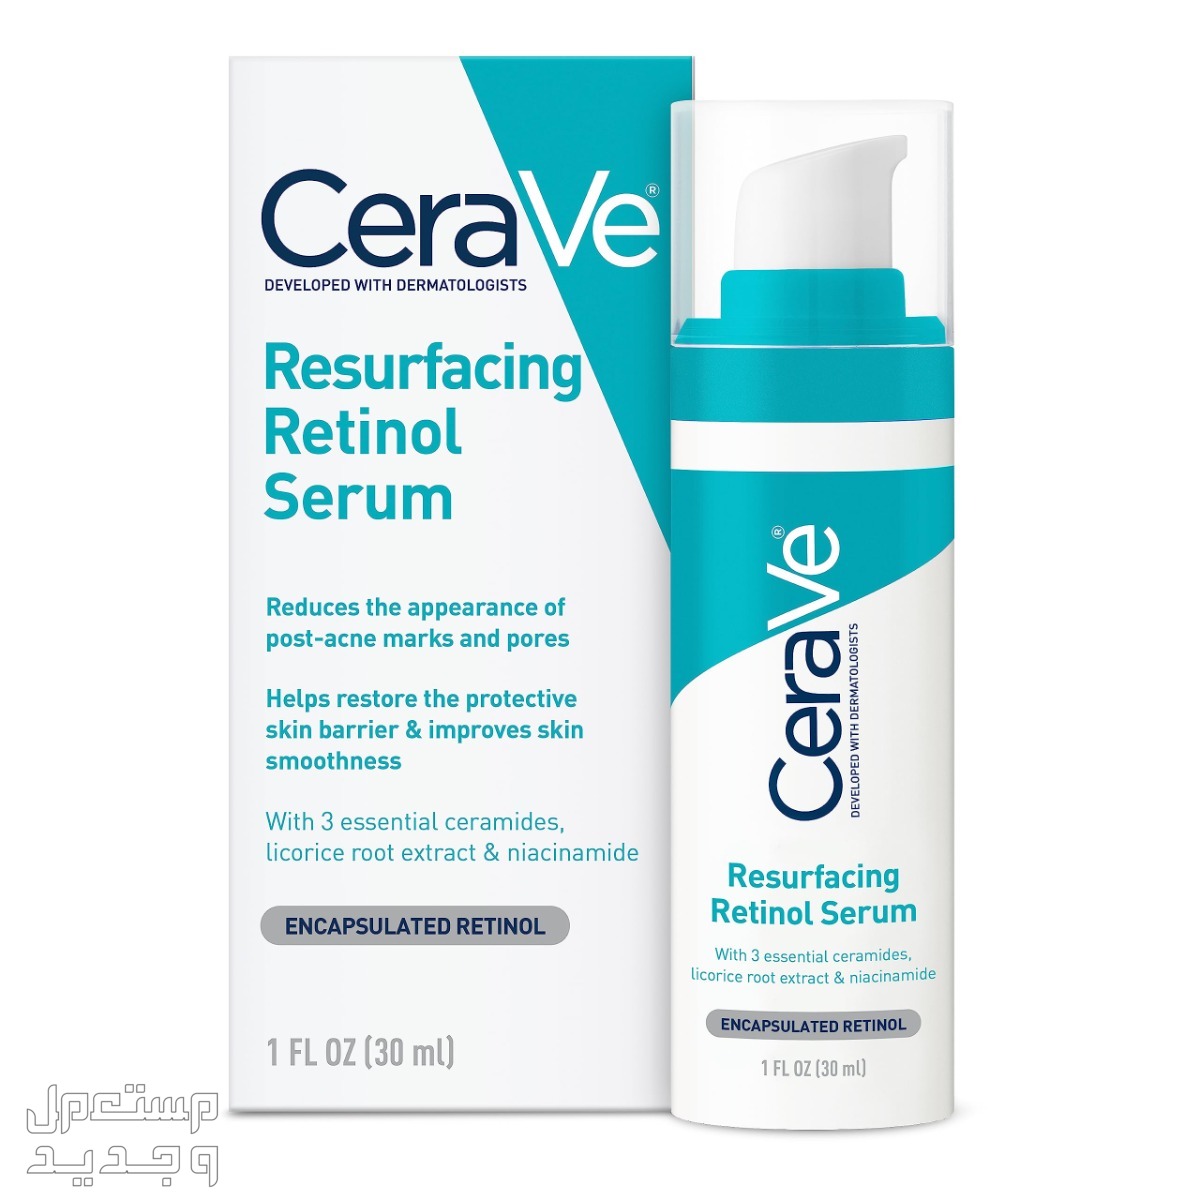 أفضل سيروم ليلي للعناية بالبشرة لعام 2023 سيروم ليلي من CeraVe Anti Aging Retinol Serum